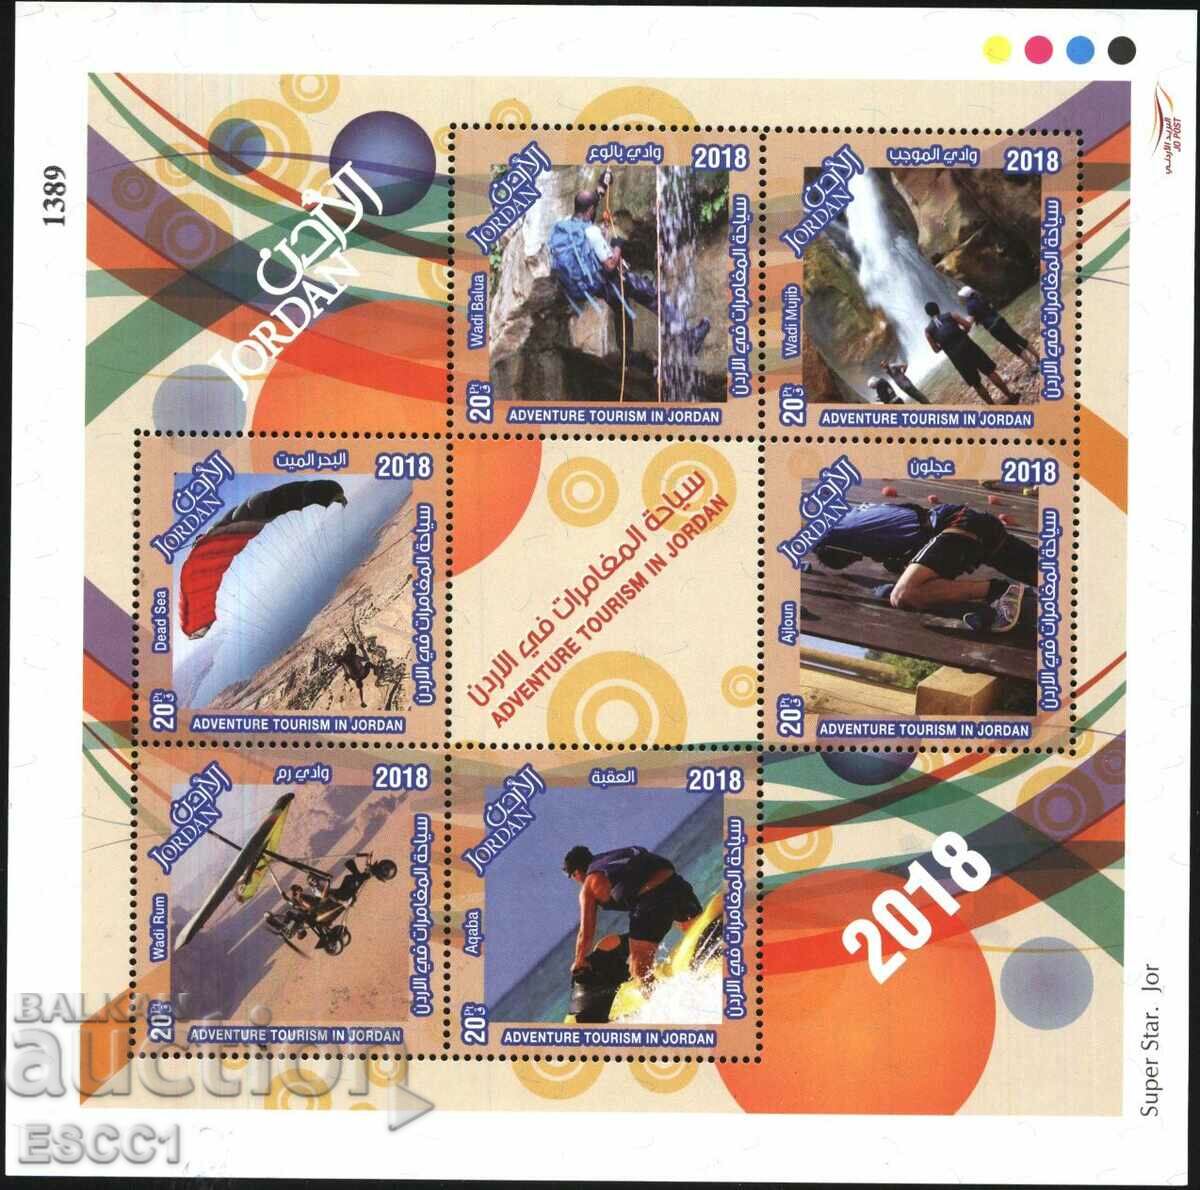 Καθαρά γραμματόσημα σε μικρό φύλλο Τουρισμός 2018 από την Ιορδανία